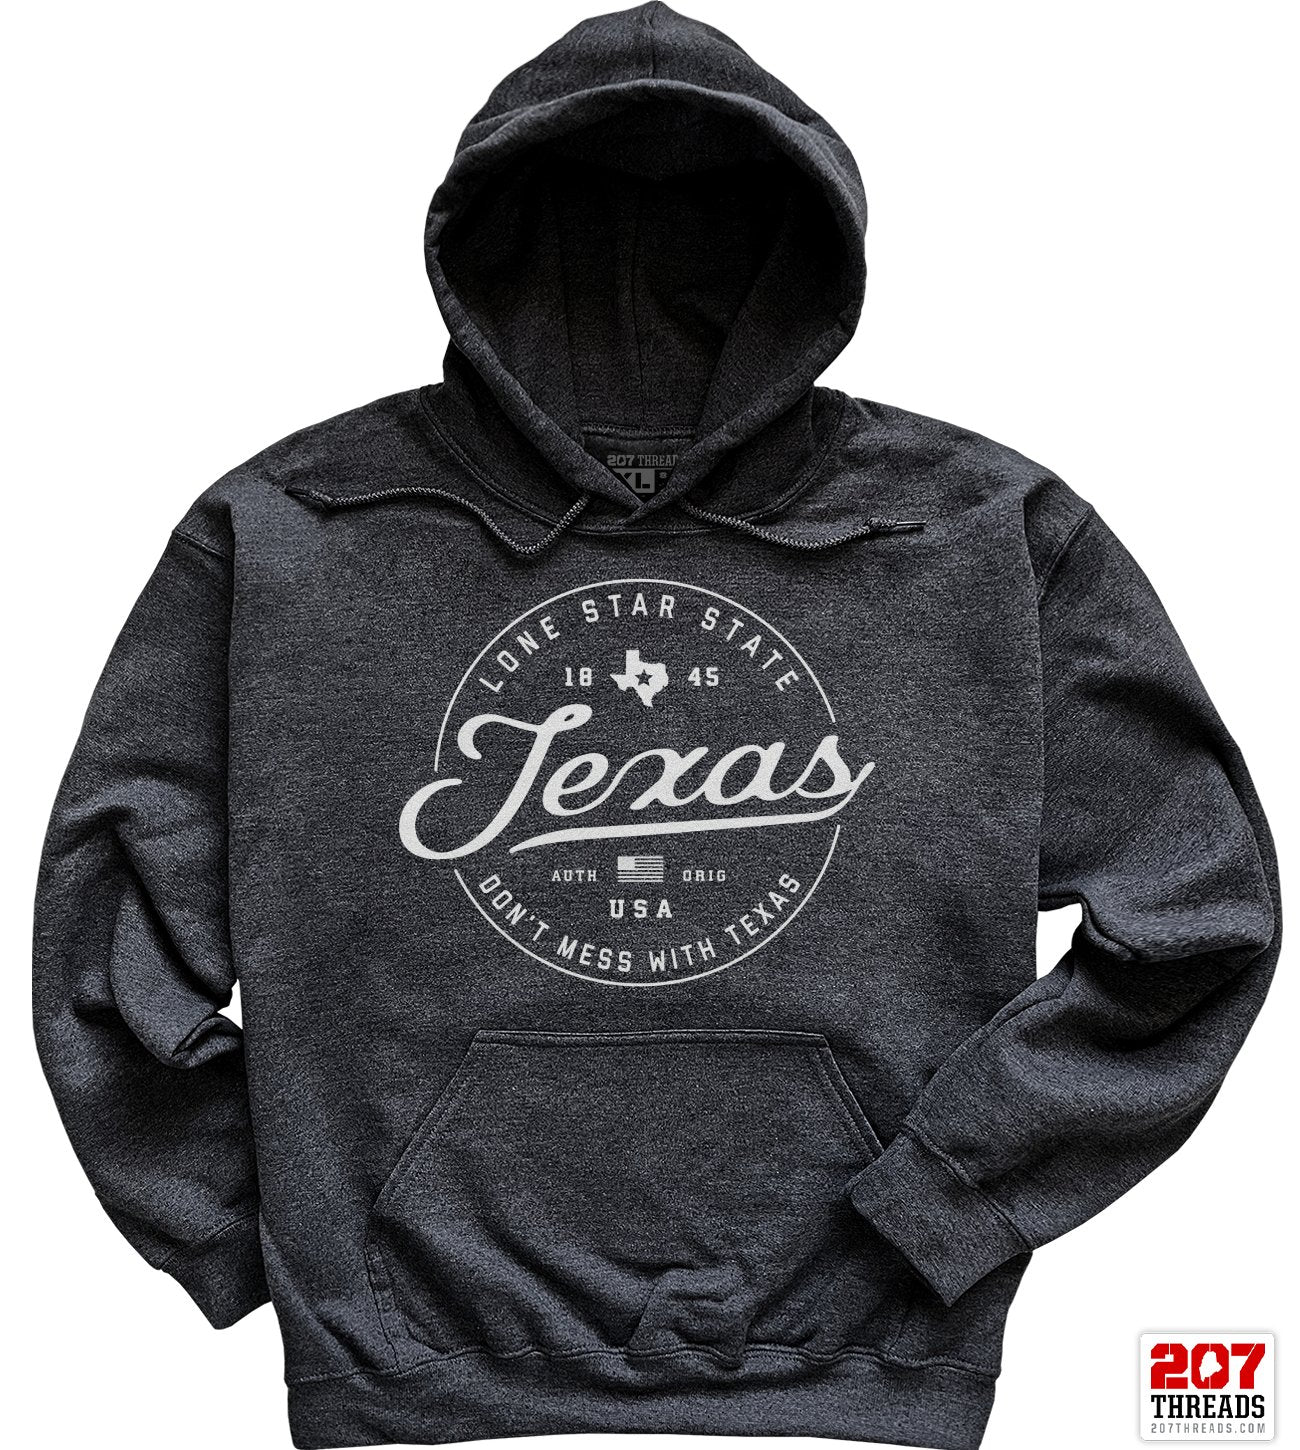 State of Texas Hoodie Sweatshirt